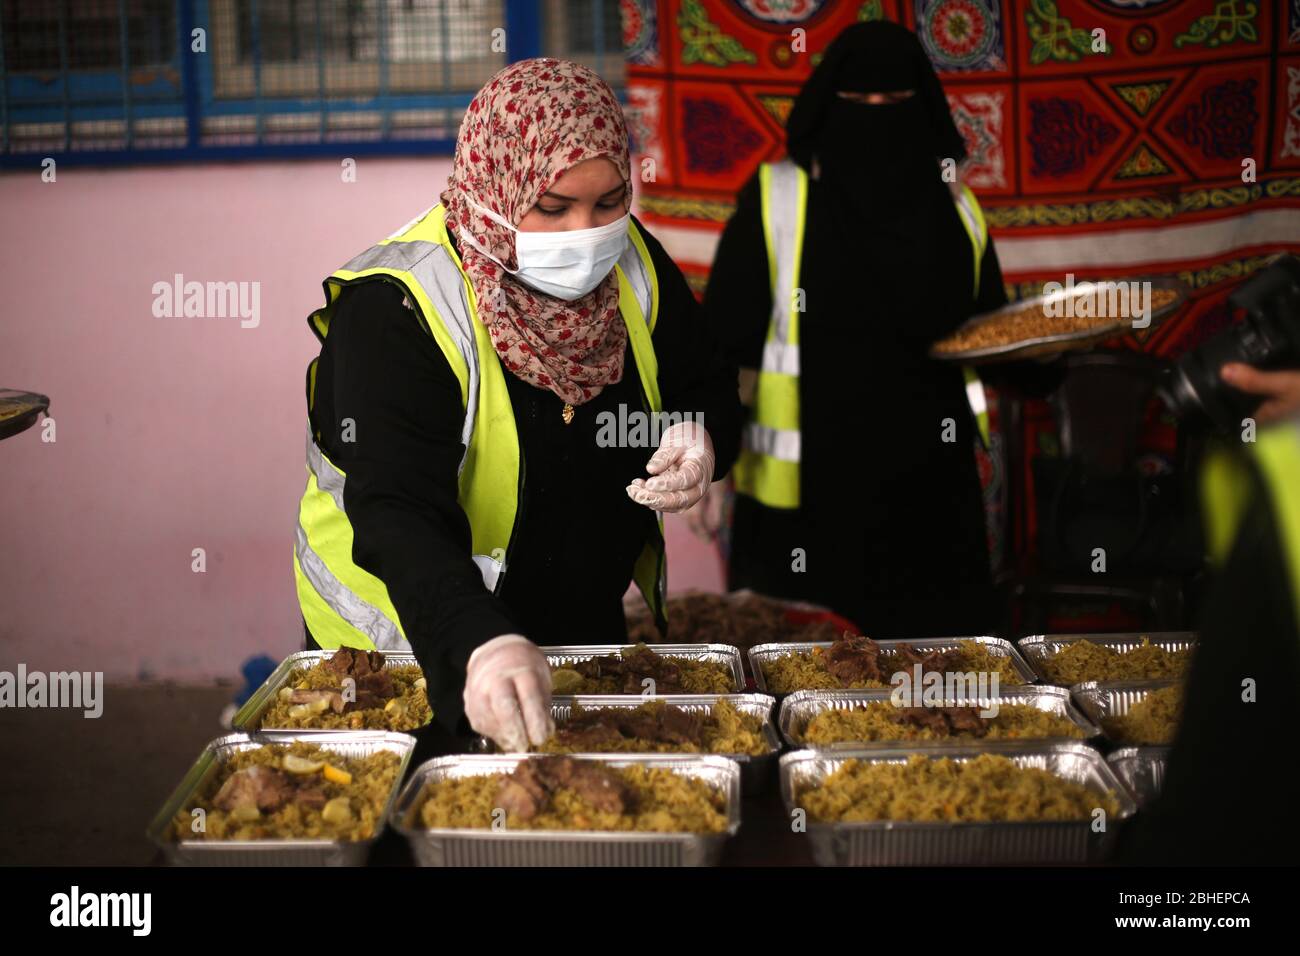 24 de abril de 2020: Gaza, Palestina. 24 de abril de 2020. Las mujeres palestinas preparan alimentos para distribuirlos a los pobres el primer día de Ramadán en la ciudad de Rafah, garantizando una comida fresca a las familias necesitadas en Gaza. La reciente pandemia del Coronavirus y el posterior bloqueo han afectado la situación financiera de muchas familias en la Faja de Gaza, lo que ha perturbado su oportunidad de obtener ingresos en el enclave palestino, ya empobrecido y subbloqueado. Crédito: Samar Abu Eluf/IMAGESLIVE/ZUMA Wire/Alamy Live News Foto de stock